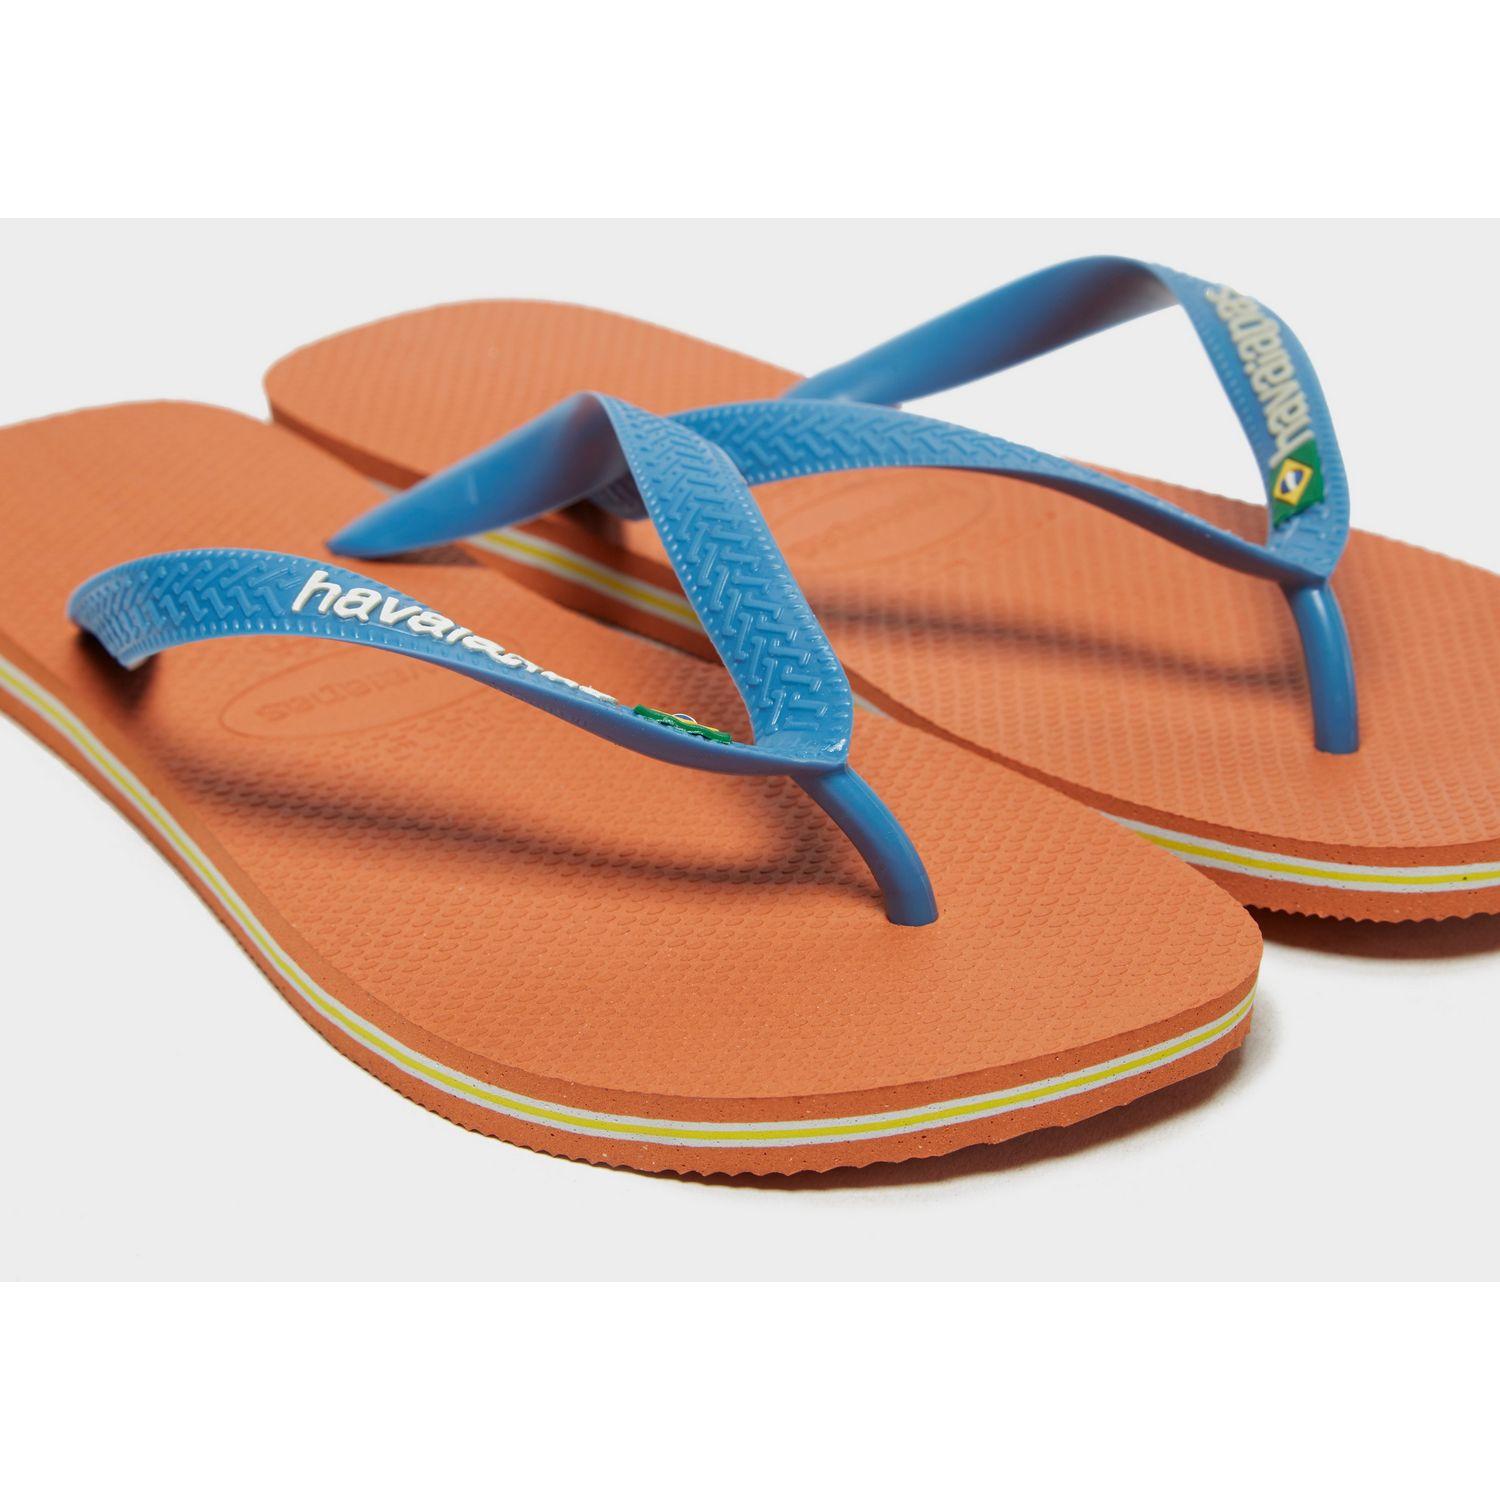 orange and blue flip flops